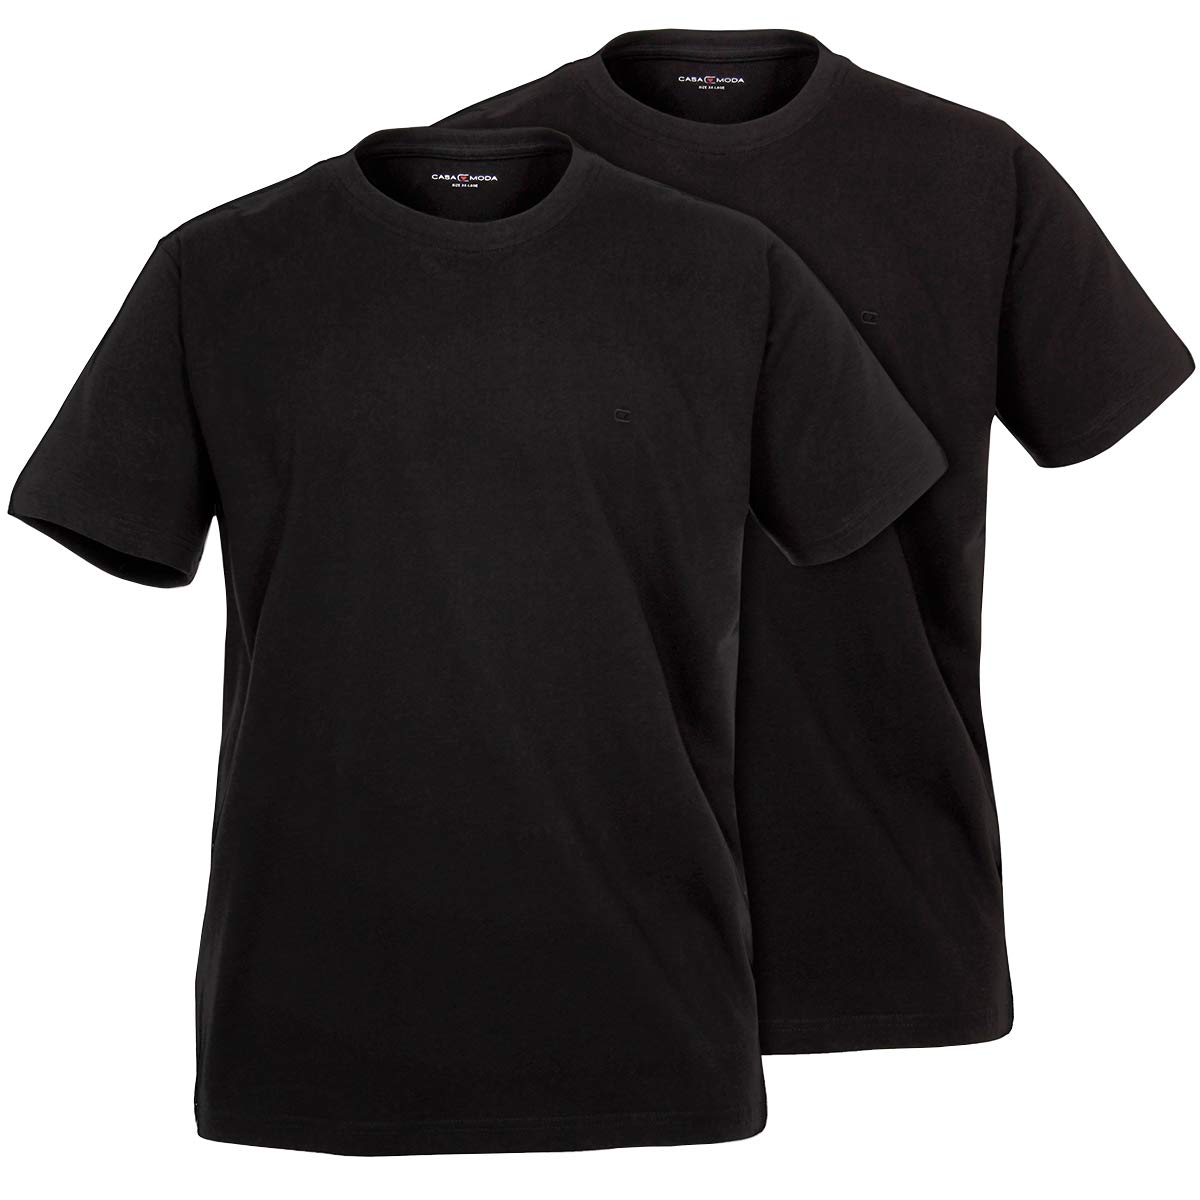 Casamoda T-Shirt Doppelpack schwarz Übergröße, XL Größe:3XL